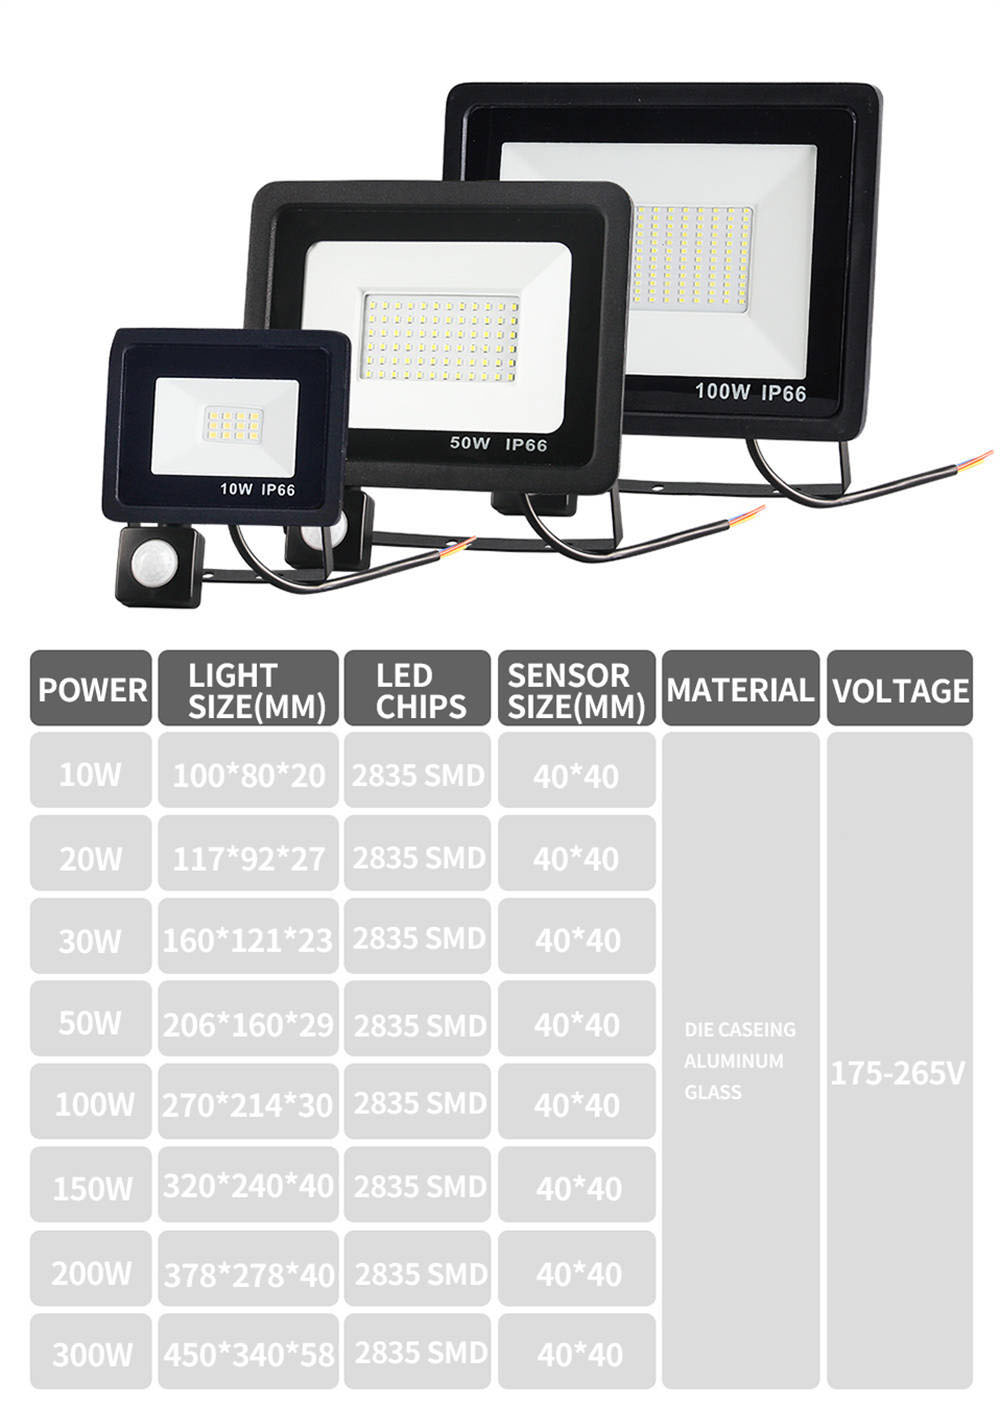 IP66 Waterproof Outdoor Slim Motion Sensor LED Flood Light Spotlight Lamp Industrial 100W 50W 30W 20W 10W LED Floodlight (4)